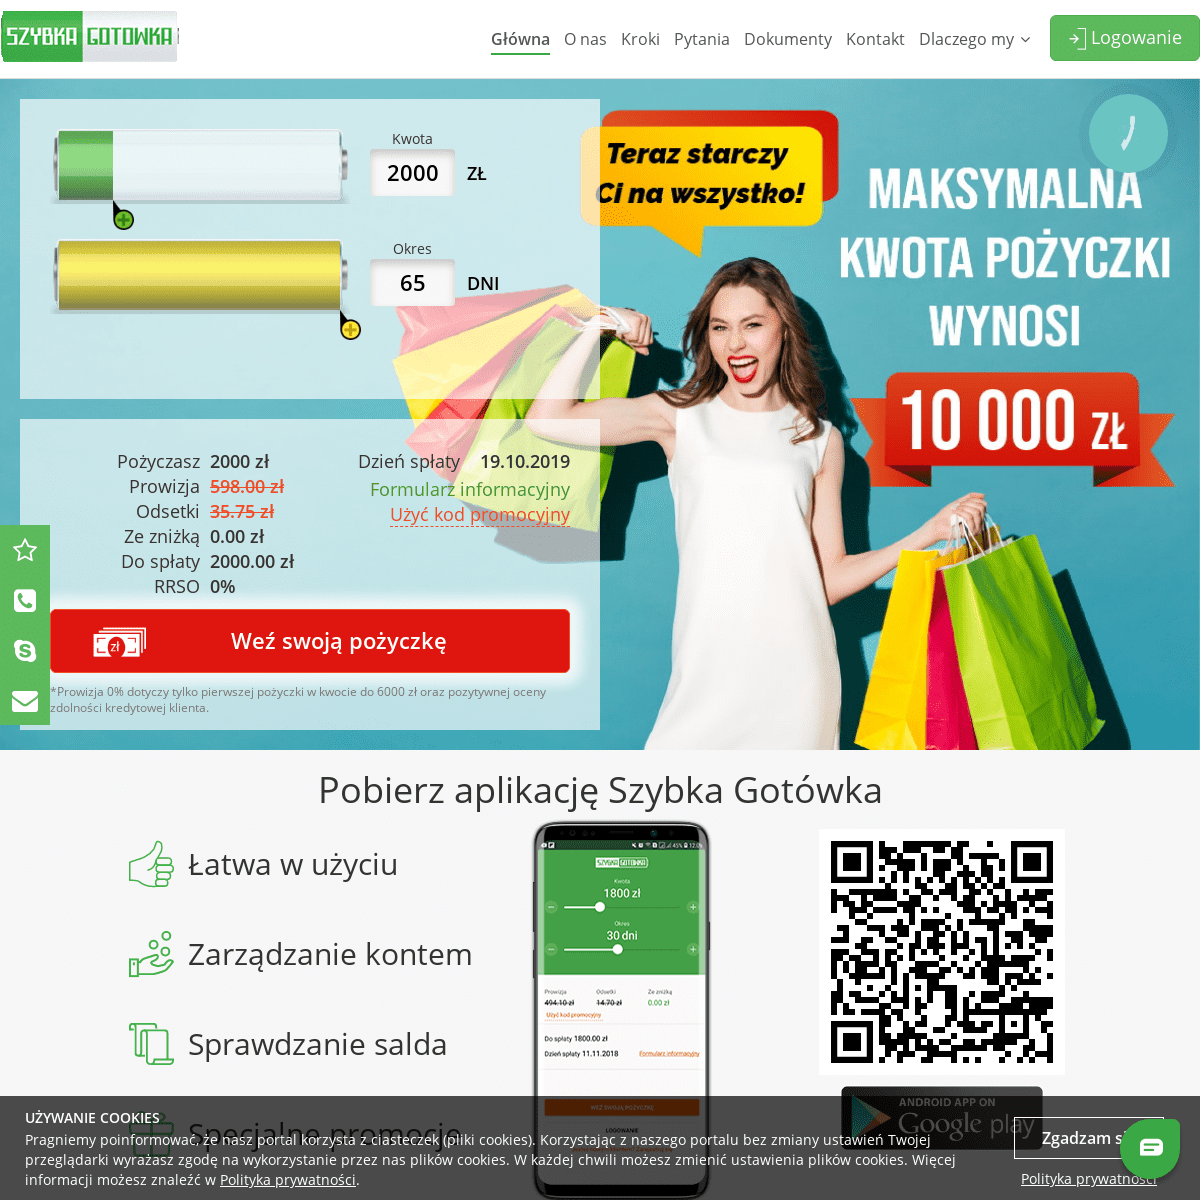 Pożyczki online do 10000 zł - Szybka Pożyczka przez Internet | Szybka Gotówka